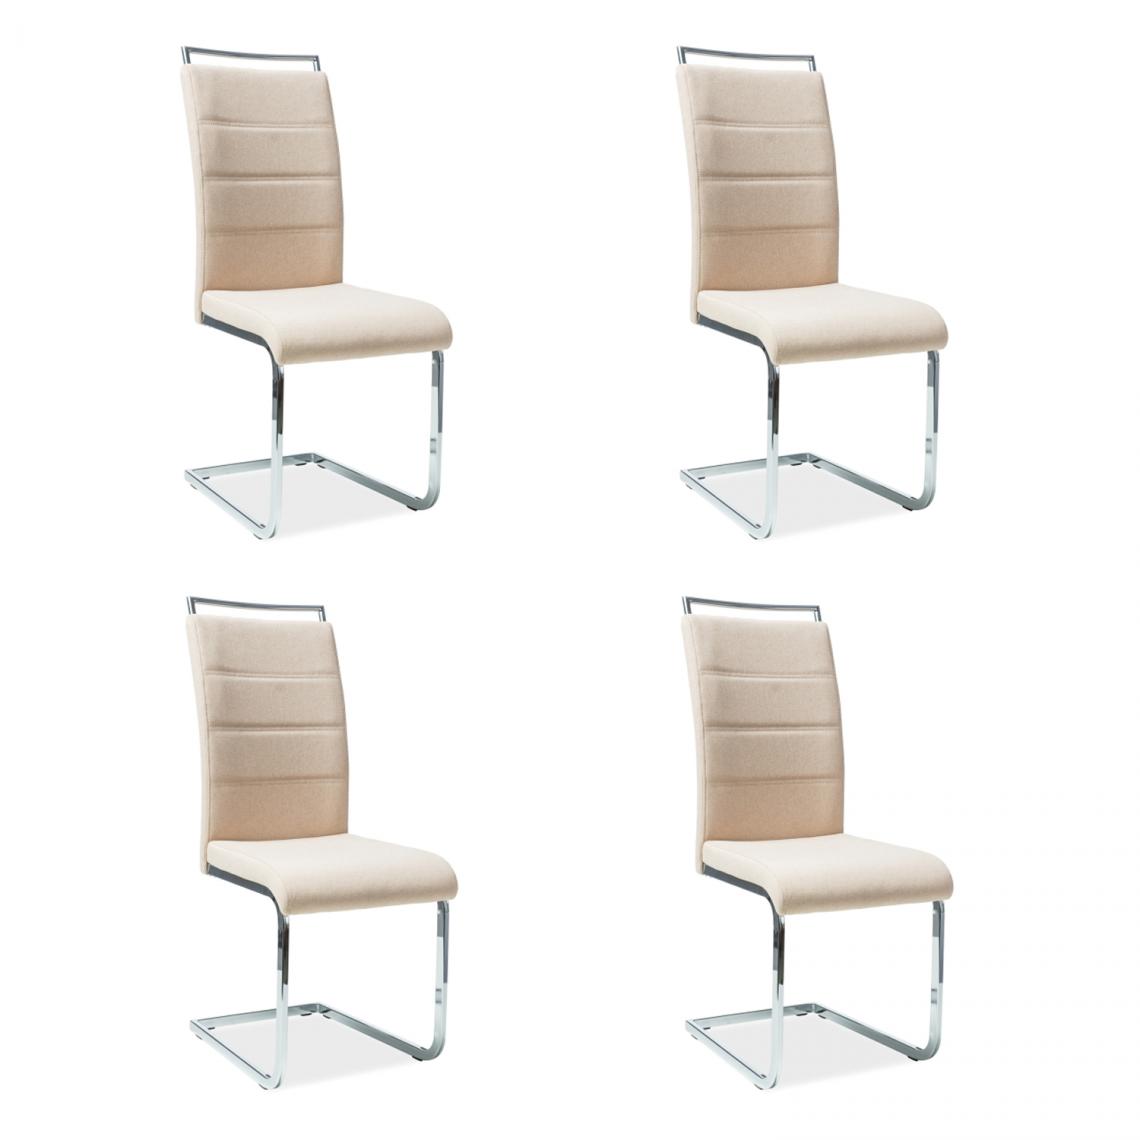 Hucoco - SHYRA - Lot de 4 chaises style moderne - 102x41x42 cm - Similicuir - Chaise salle à manger - Beige - Chaises